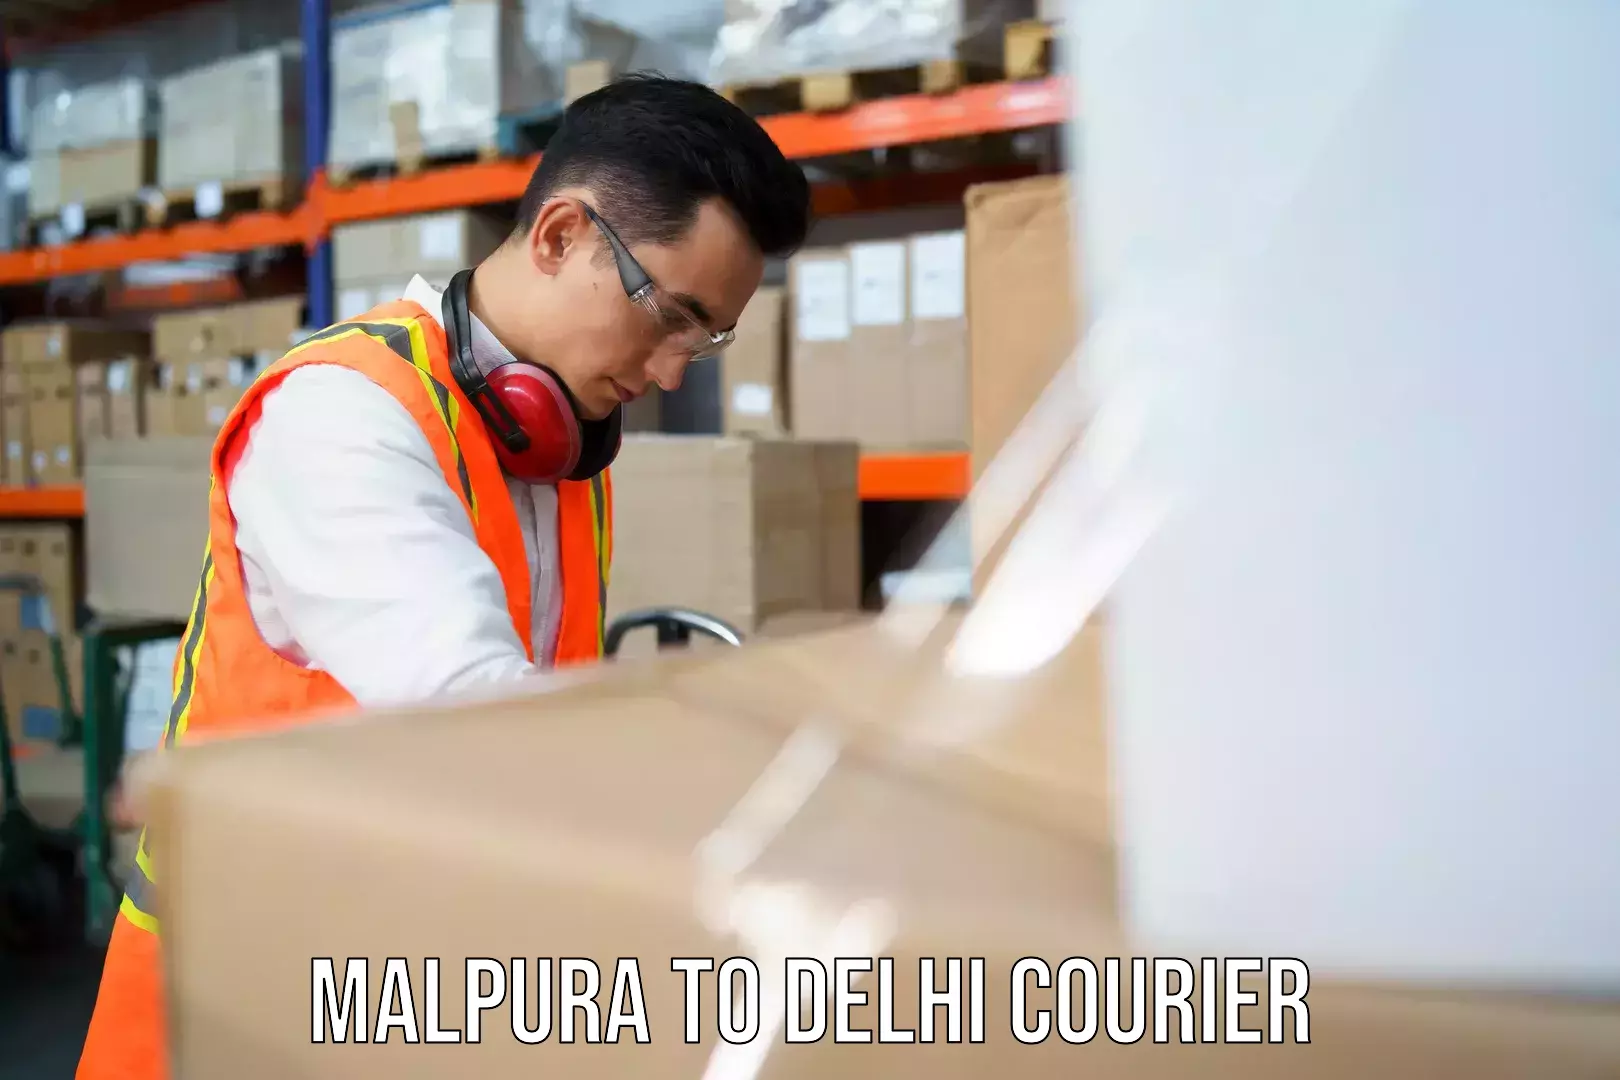 Courier dispatch services Malpura to Delhi